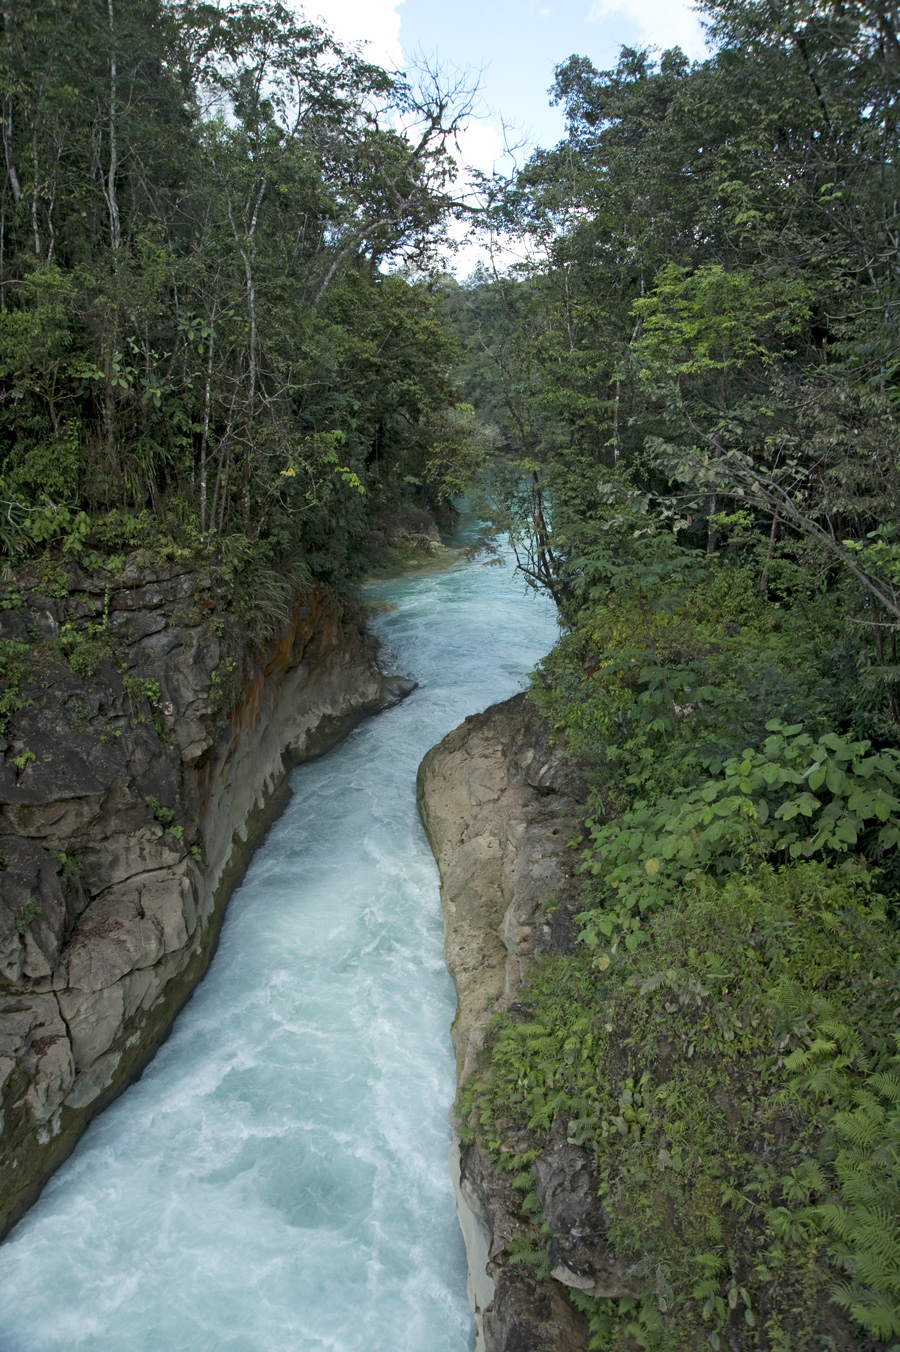 Rio Santo Domingo at Las Nubes, Chiapas, Mexico with a 24mm lens